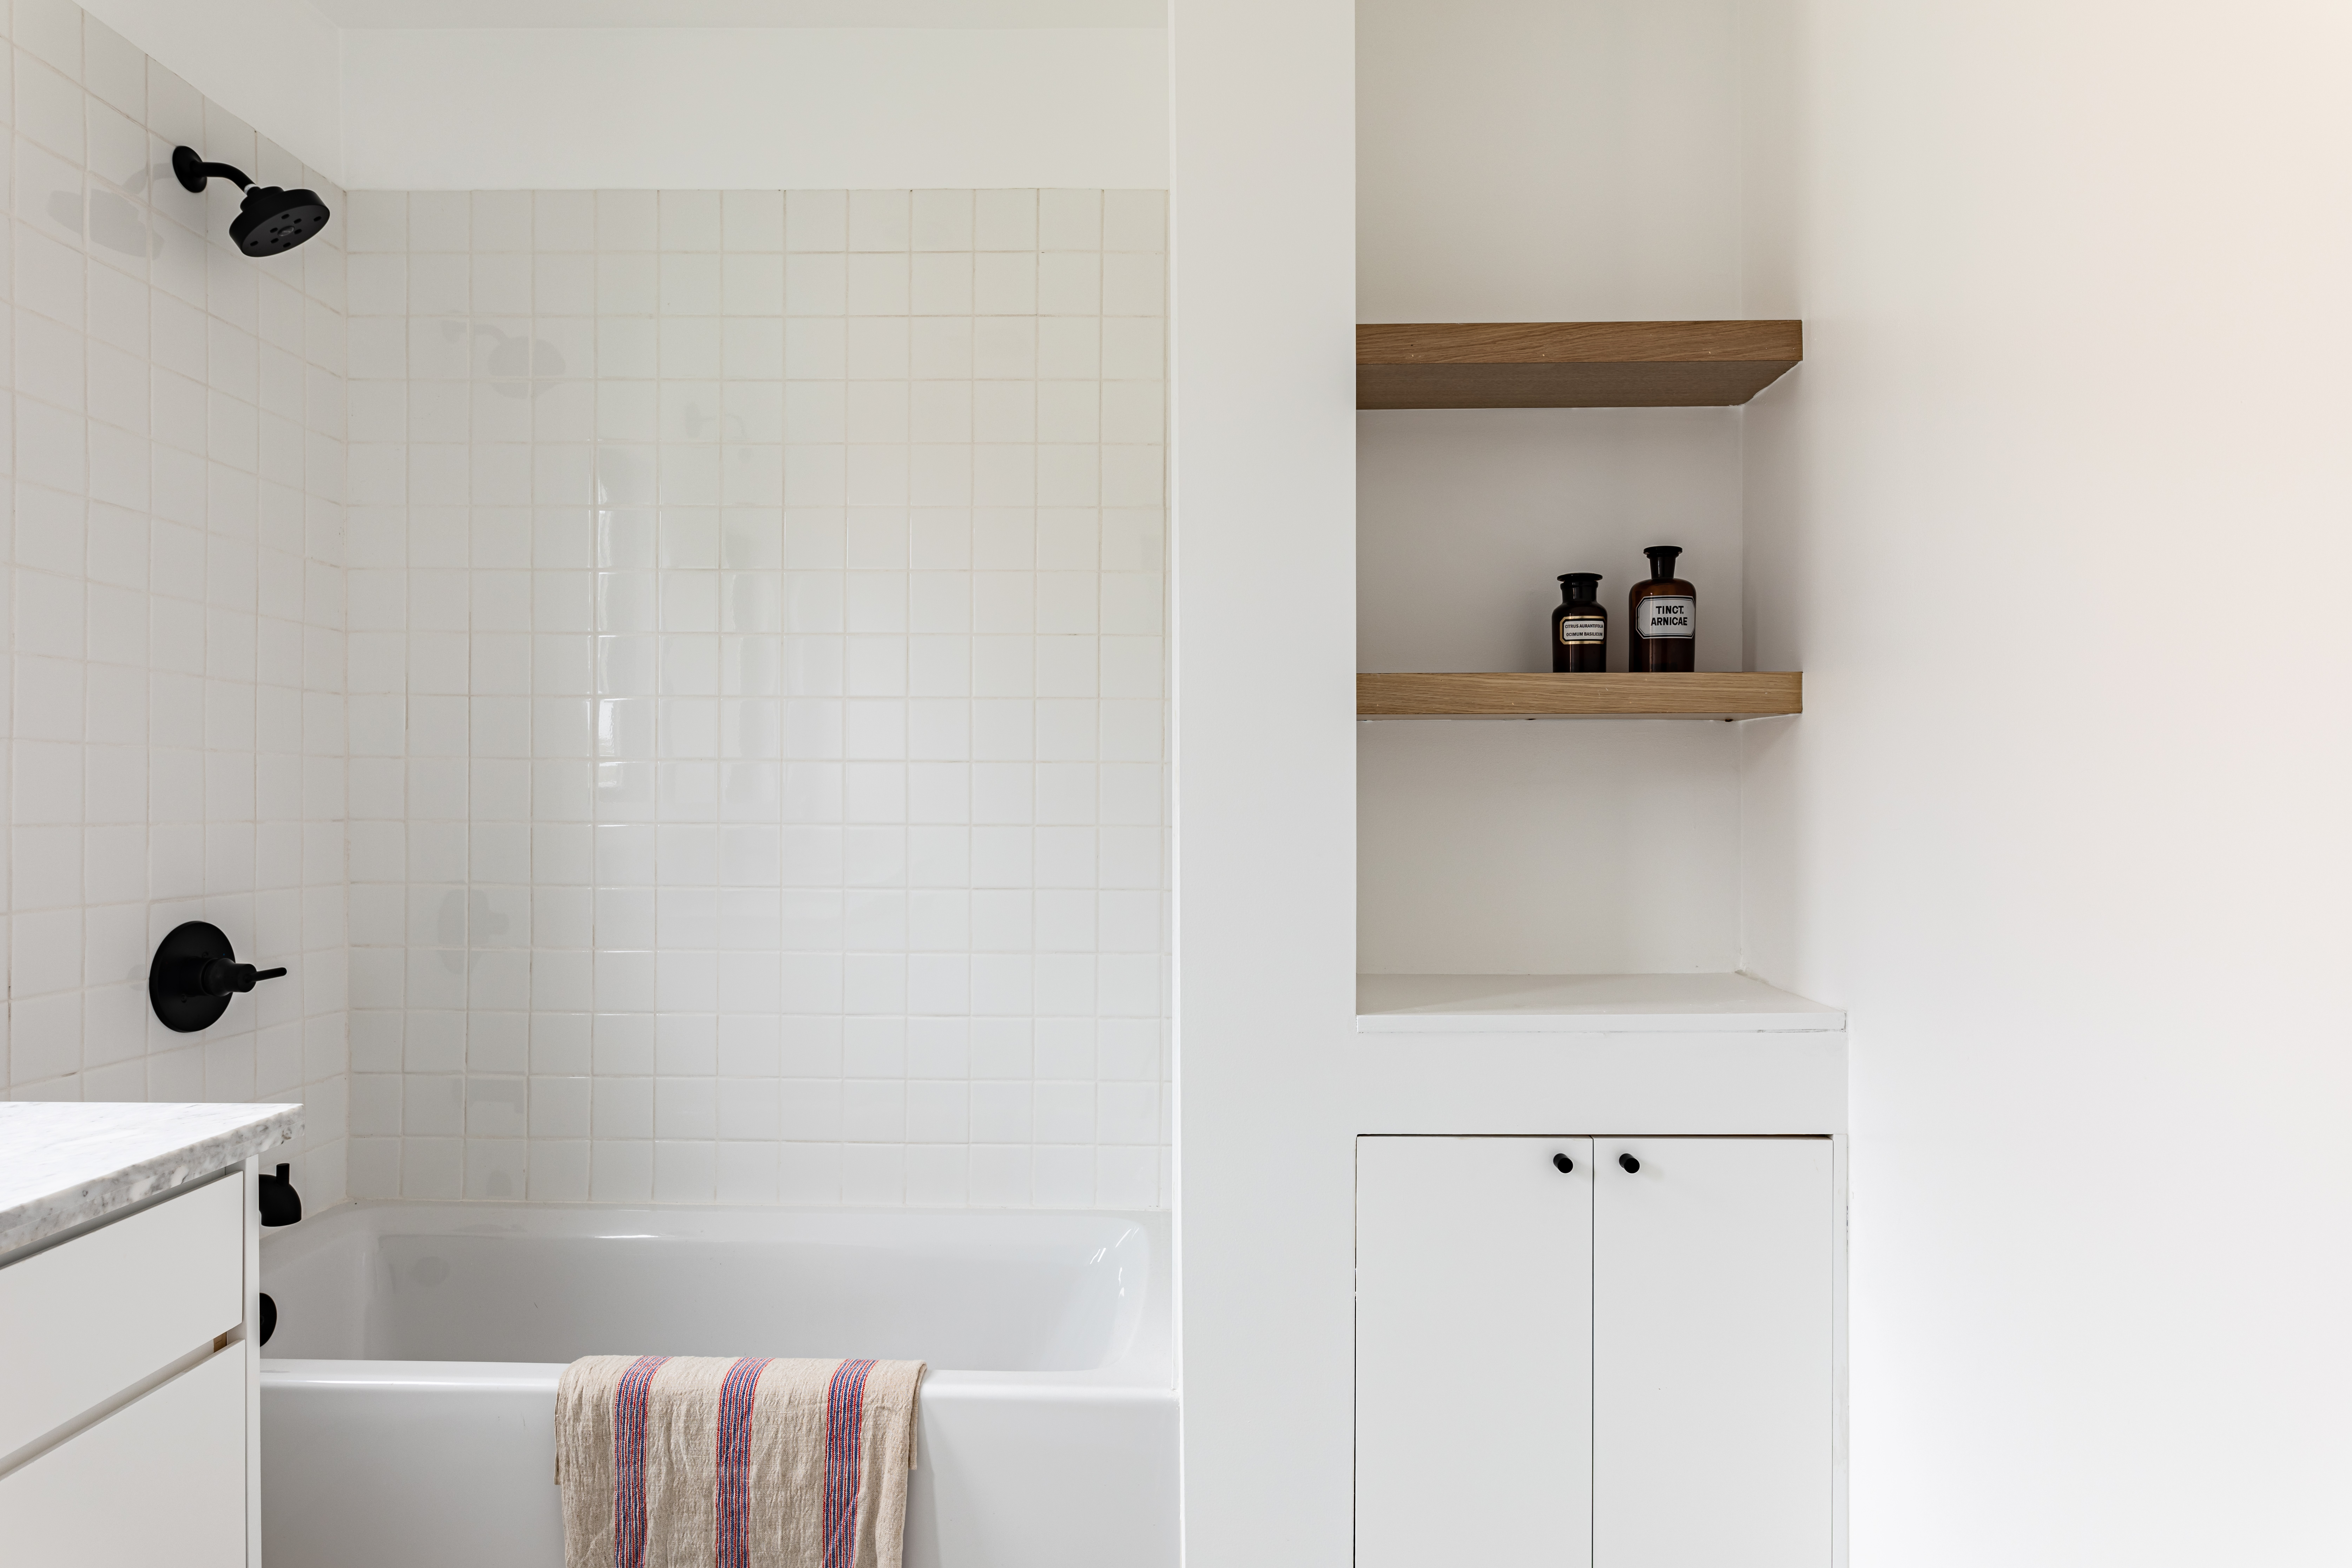 Bathroom Shelves: A DIY Homeowner's Guide